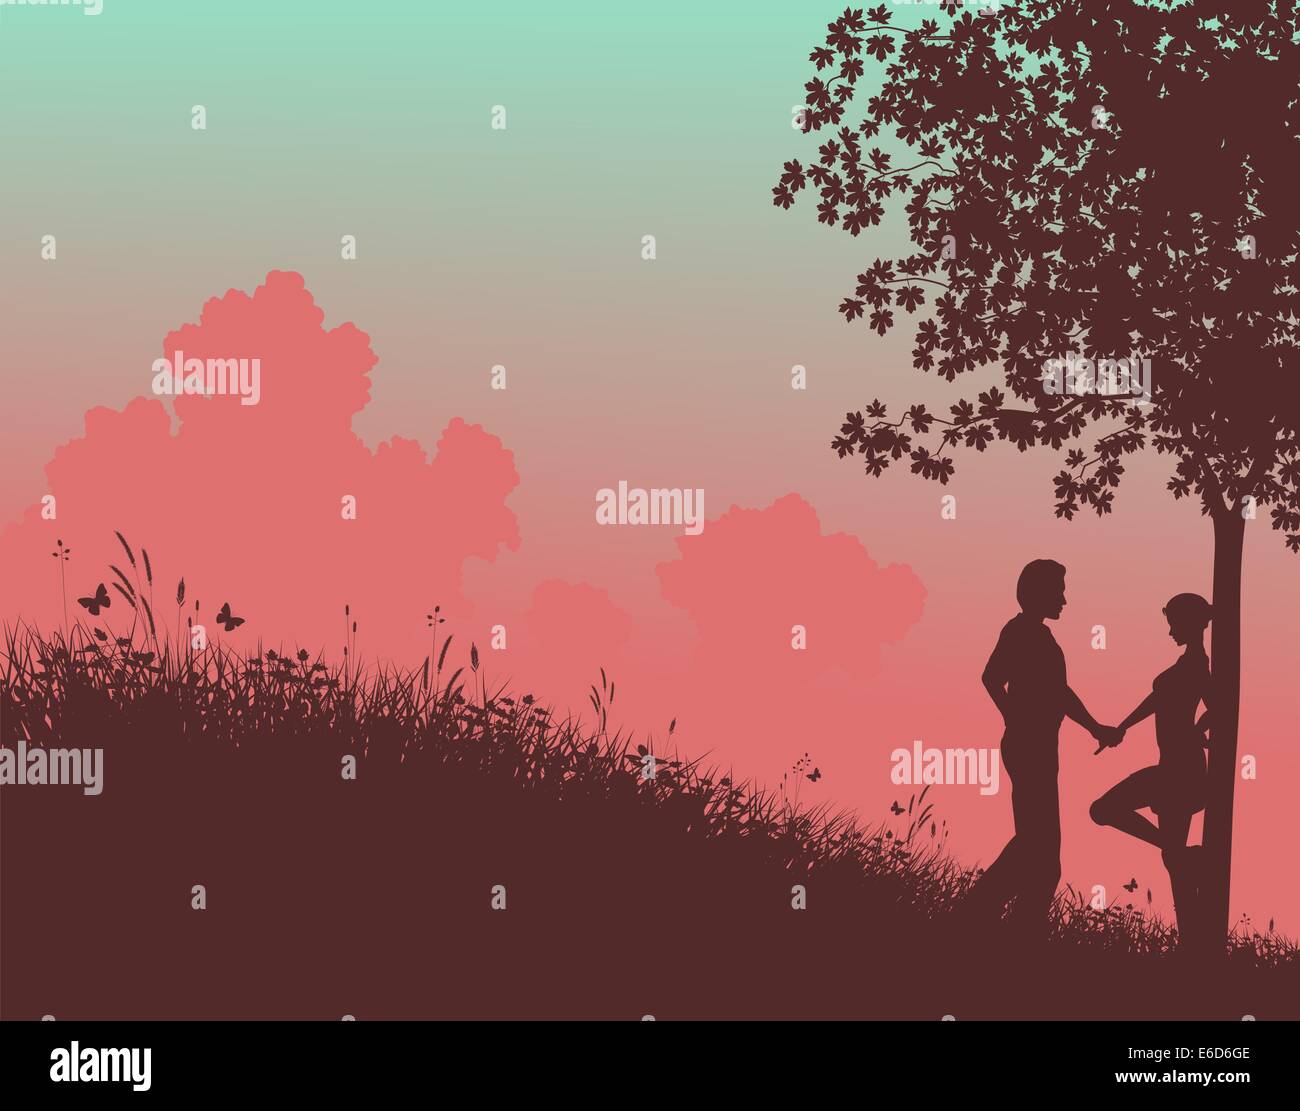 Vettore modificabile silhouette di una giovane coppia in un campo con la gente, albero e l'erba come elementi separati Illustrazione Vettoriale